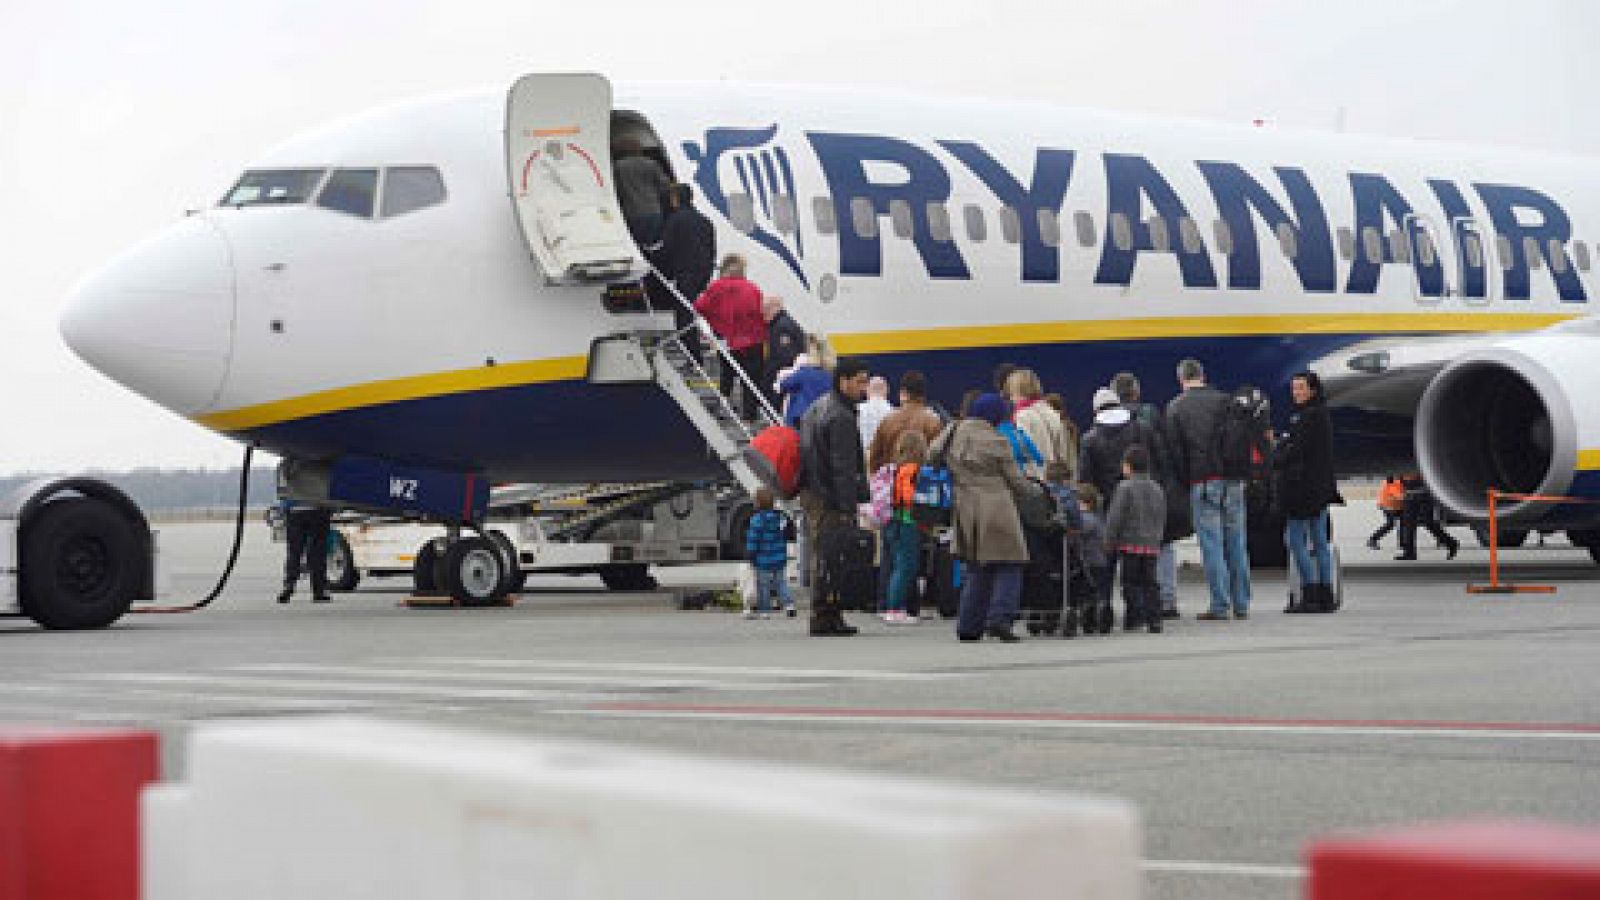 camioneta social Arcaico Ryanair limitará las maletas de cabina | RTVE.es